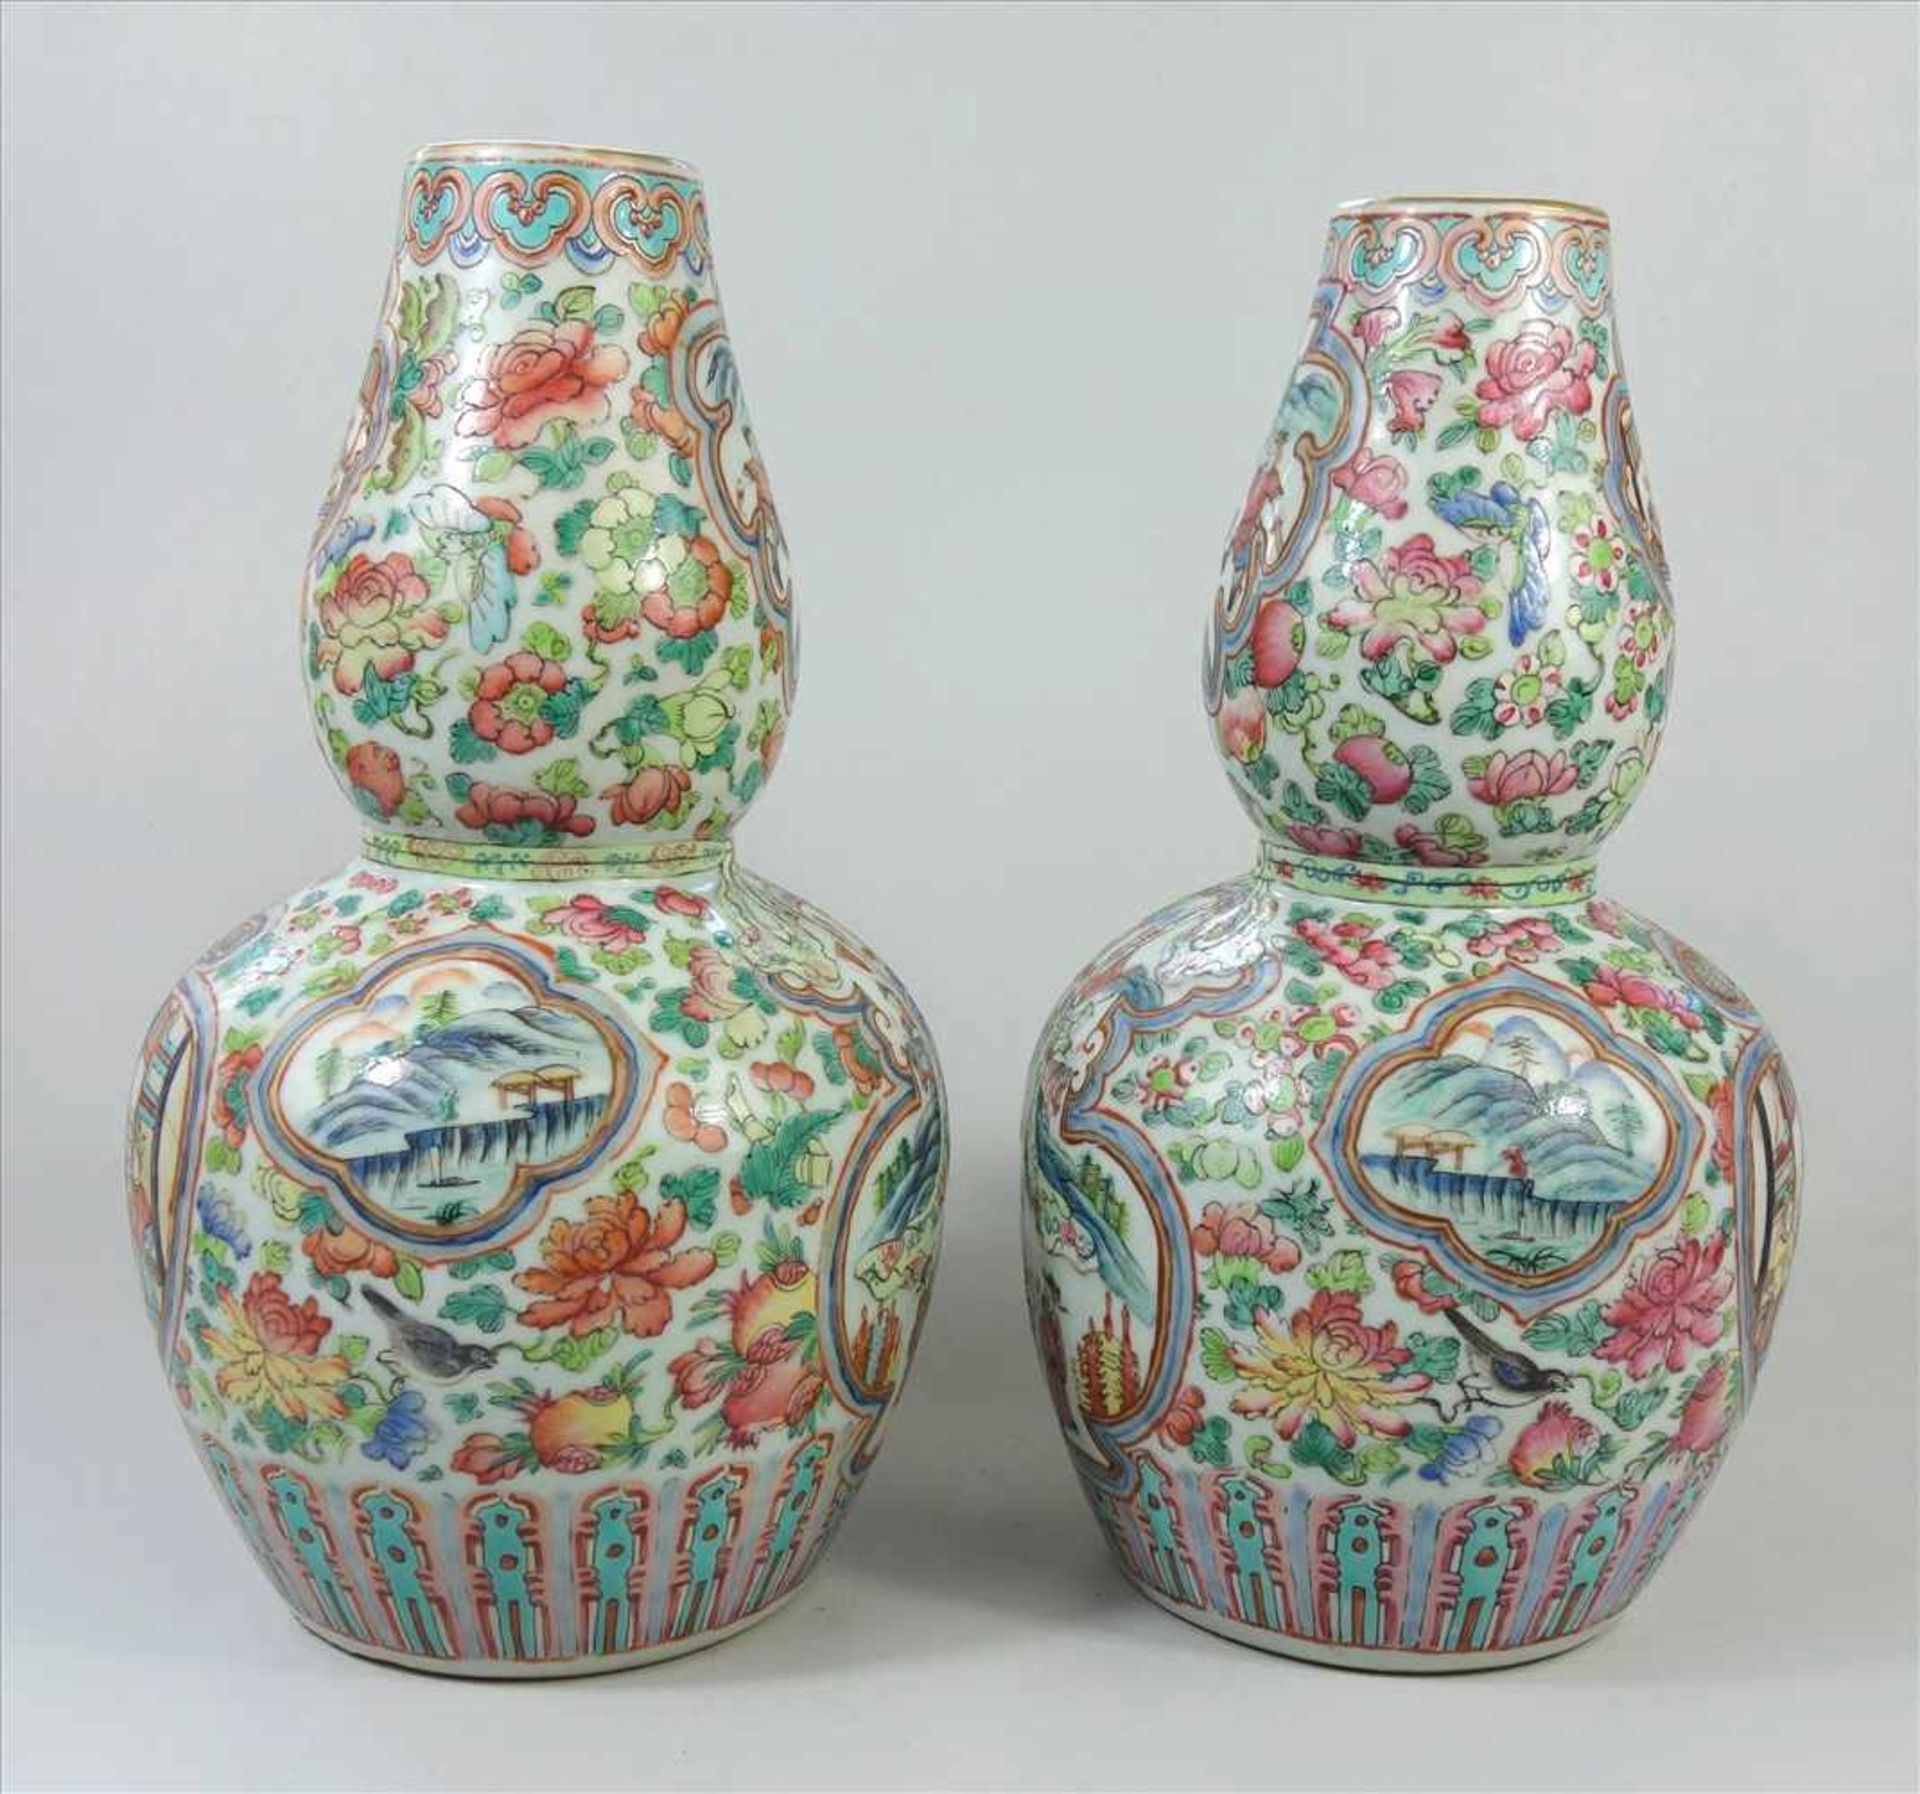 Paar Vasen, famille rose, China, 19. Jahrhundert, Kalebassen-Form, weißes Porzellan, umlaufend - Image 4 of 5